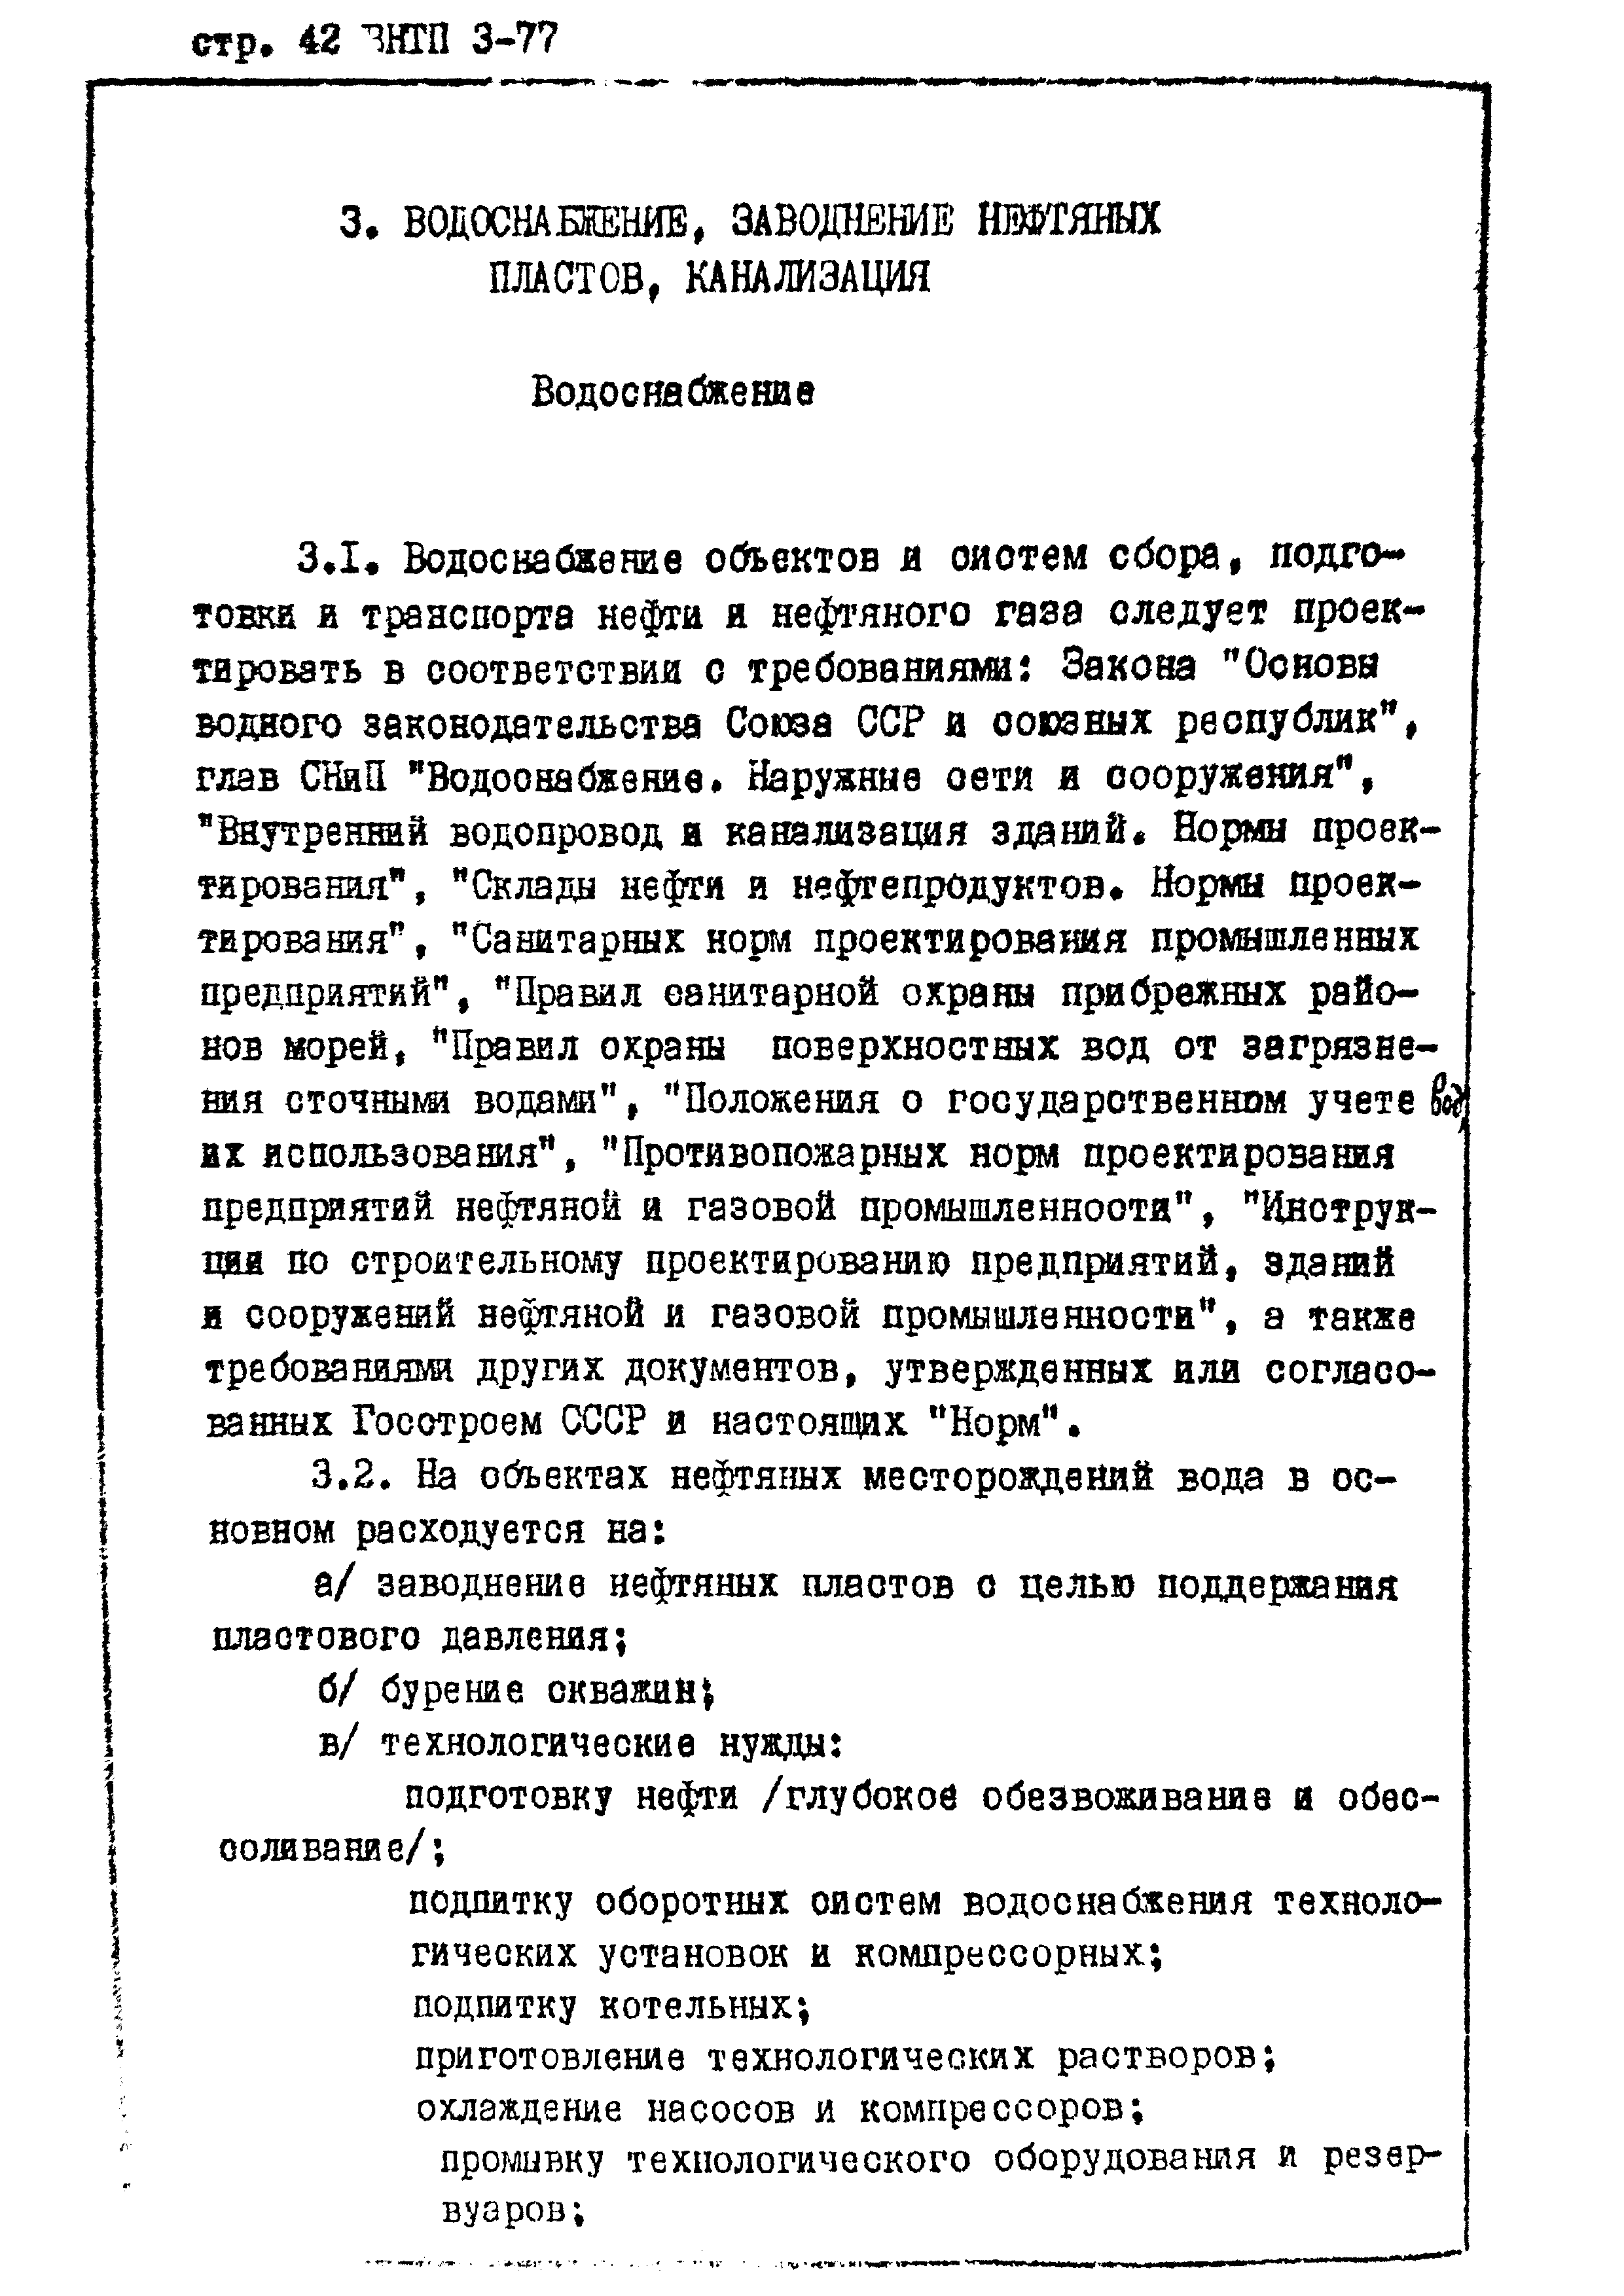 ВНТП 3-77